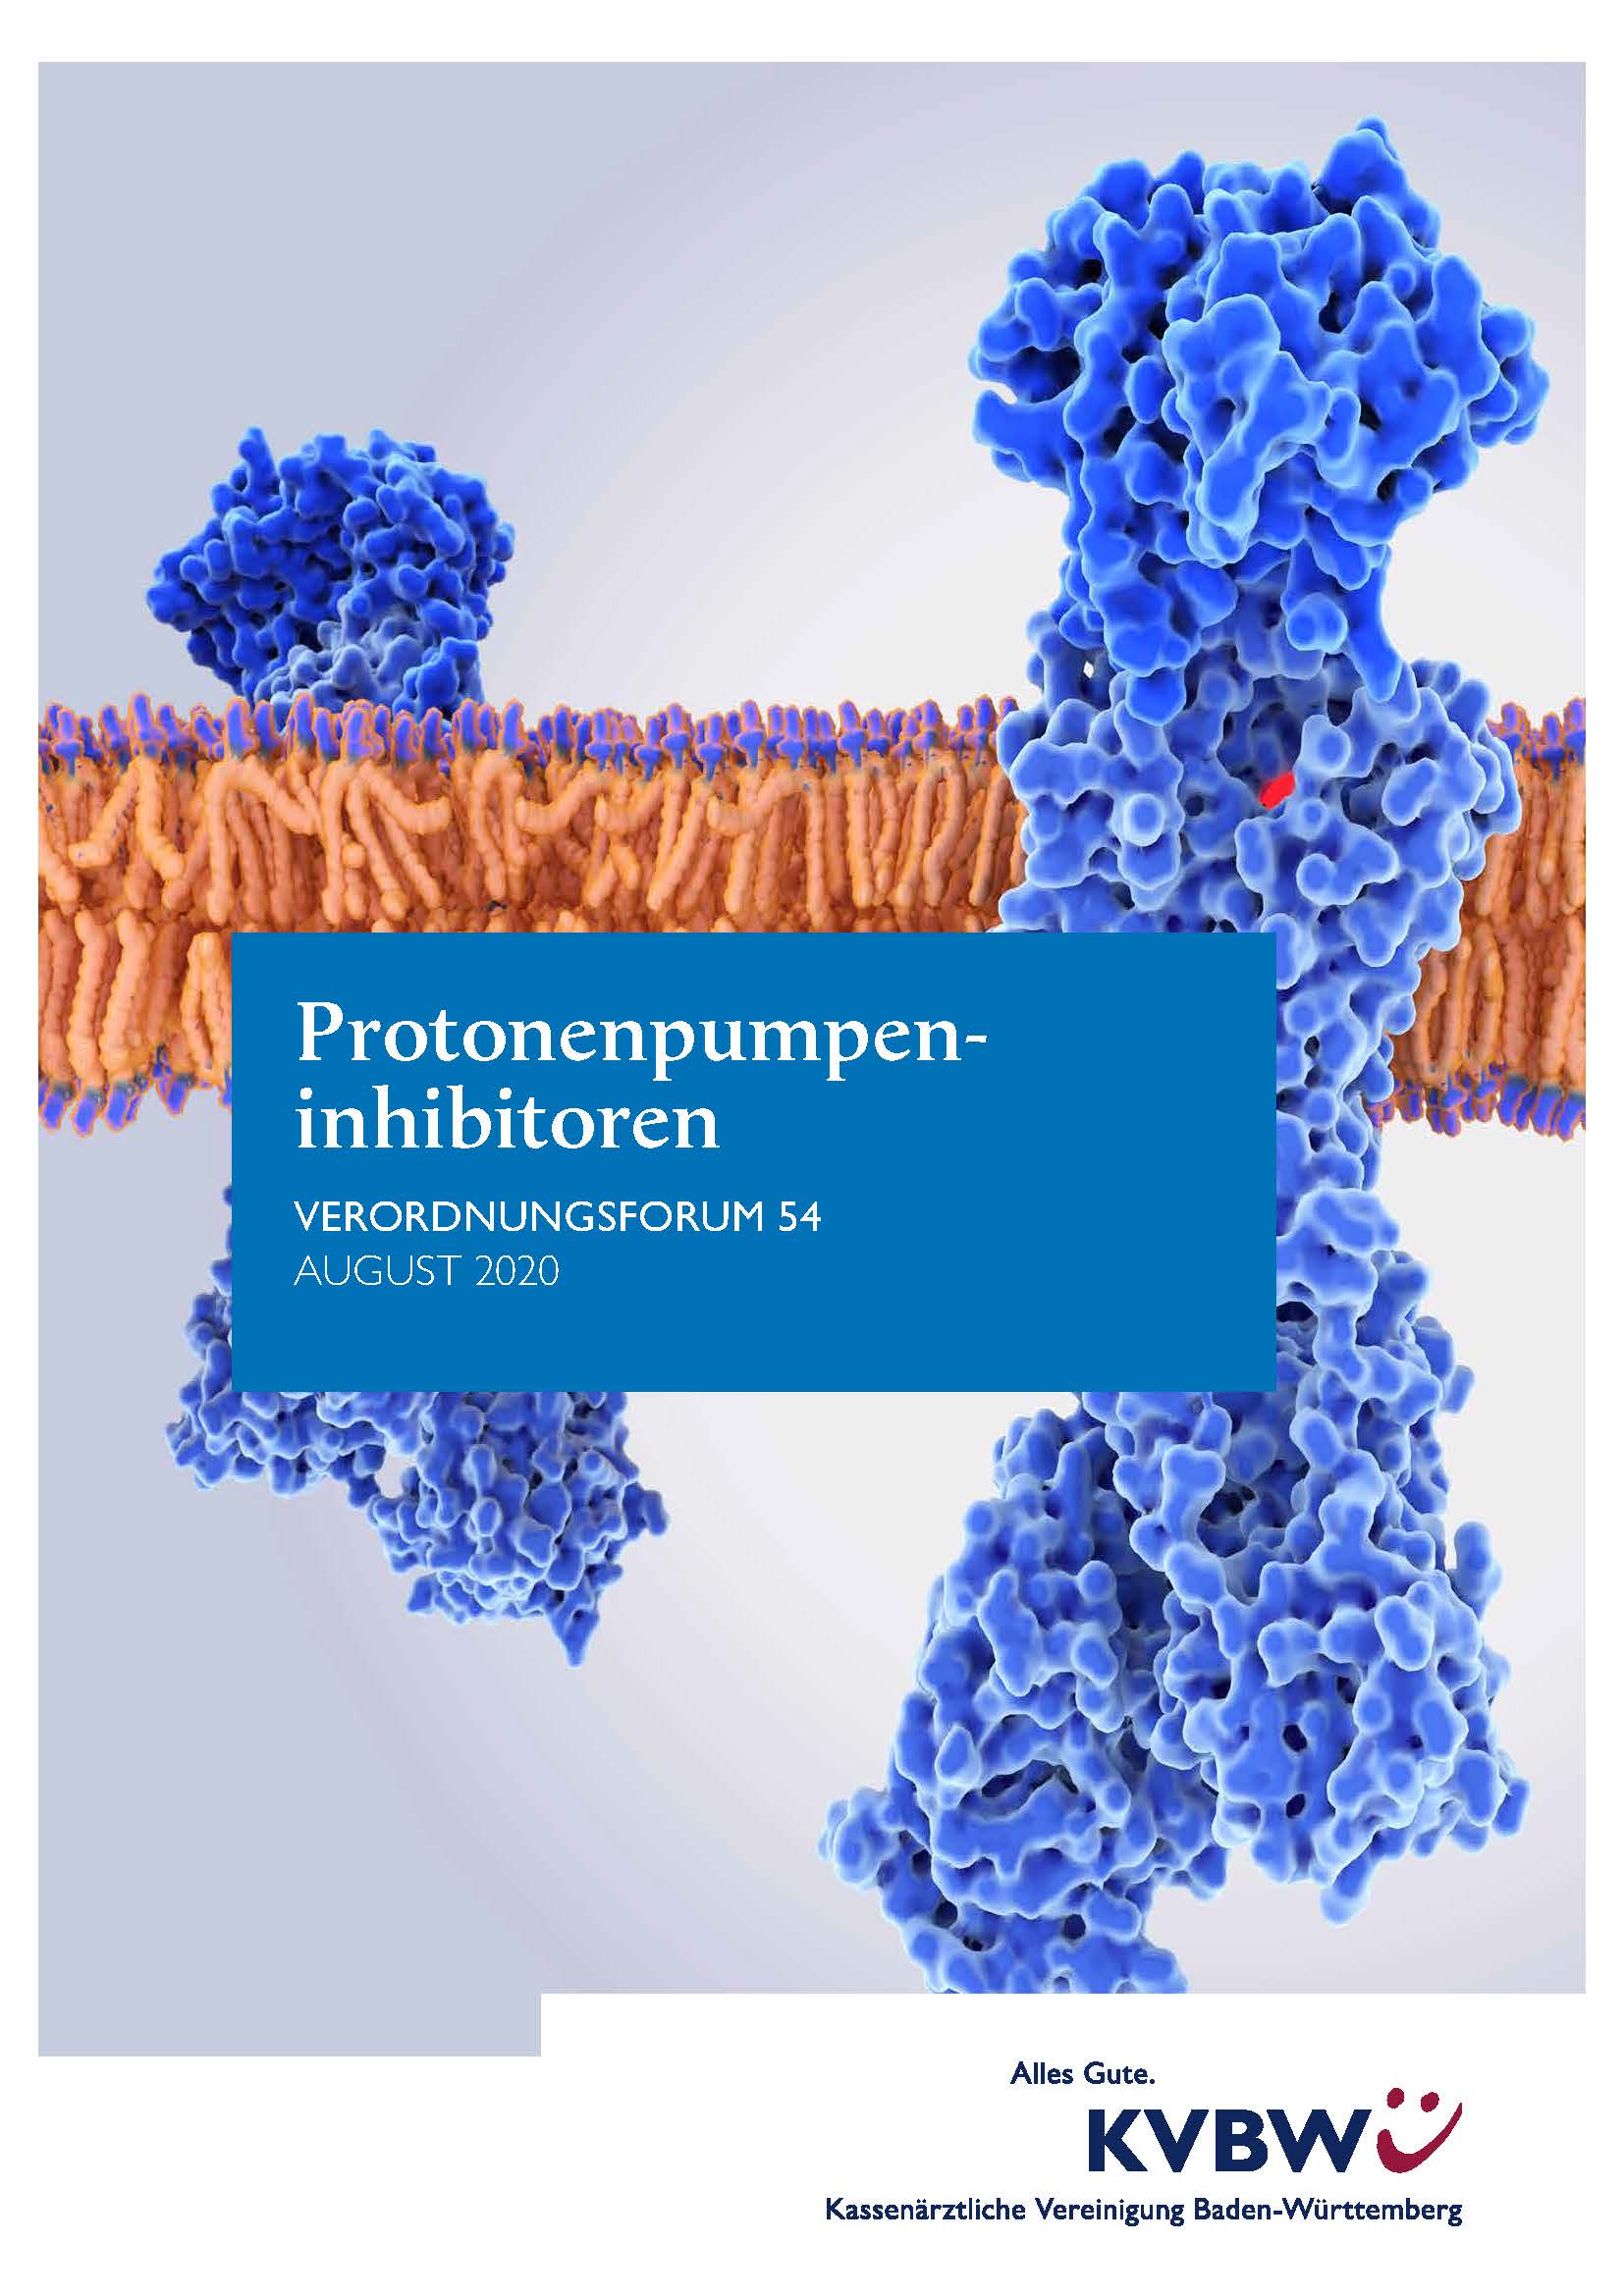 Verordnungsforum 54: Protonenpumpeninhibitoren (Stand: August 2020)